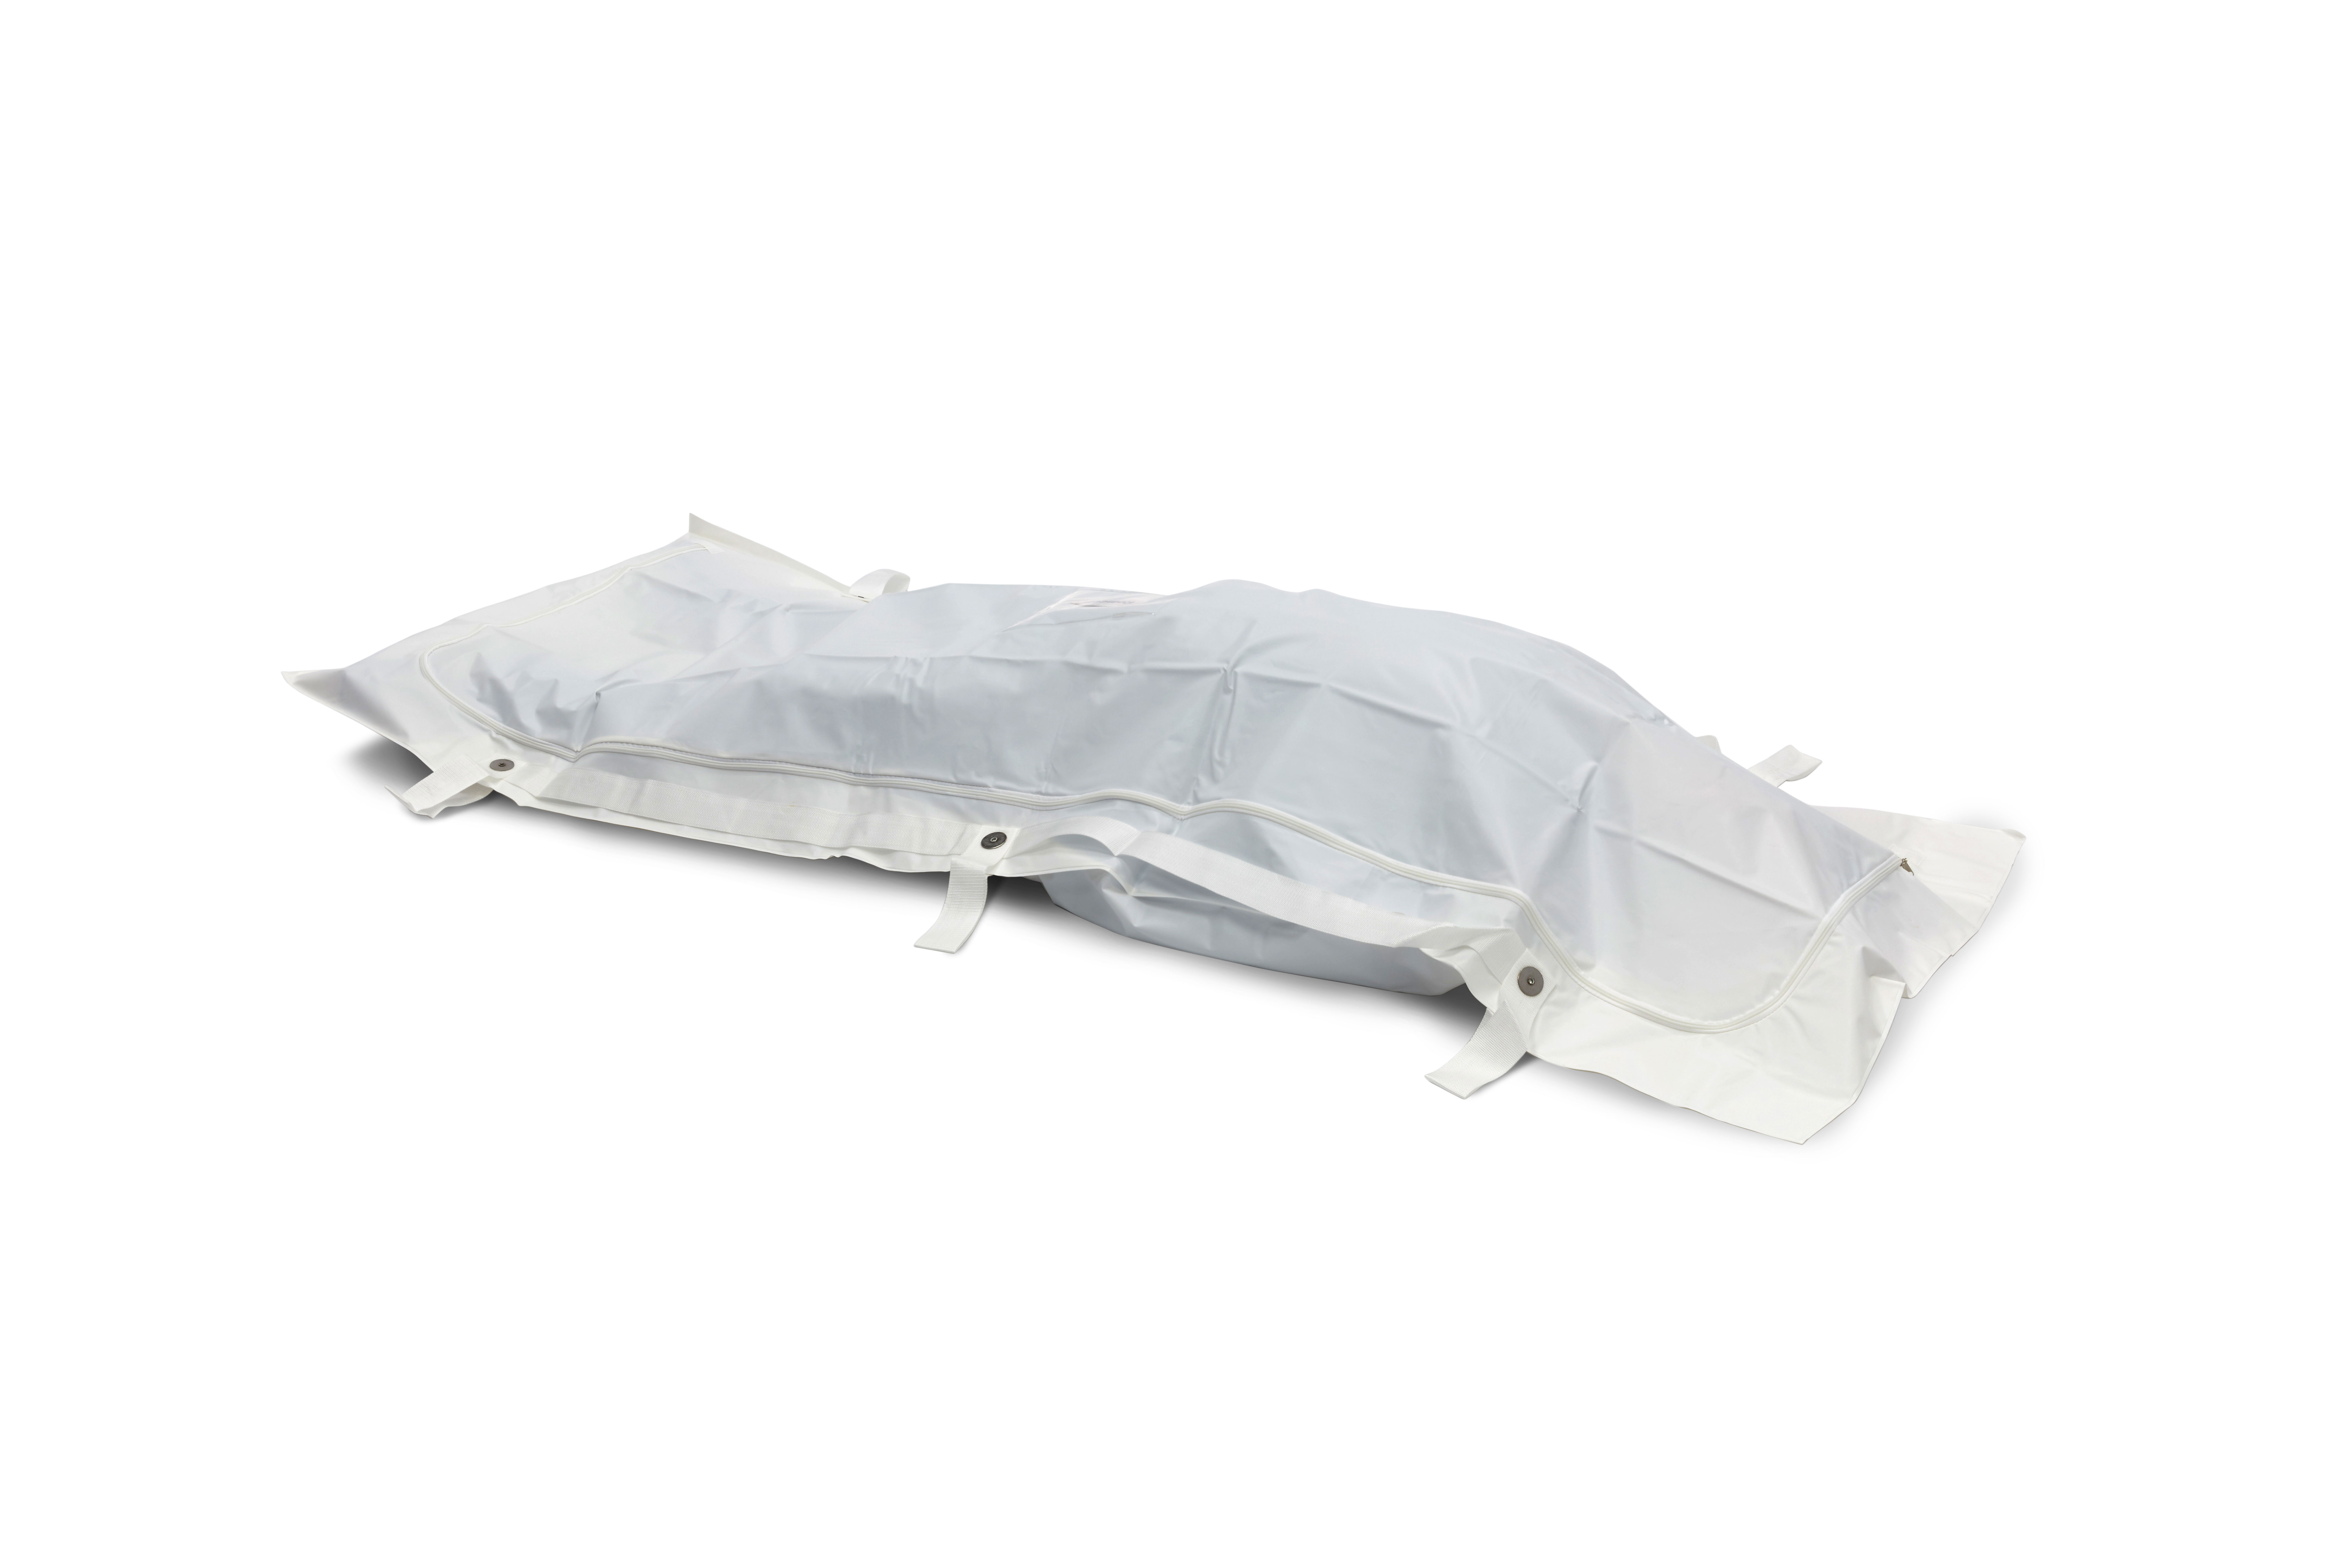 BODYBAGS Bolsas para transportar cadáveres/mortuorias de PEVA, blancas, 6 asas, 90 x 230 cm, por unidad en una bolsa de polietileno, 20 unidades en una caja de cartón.